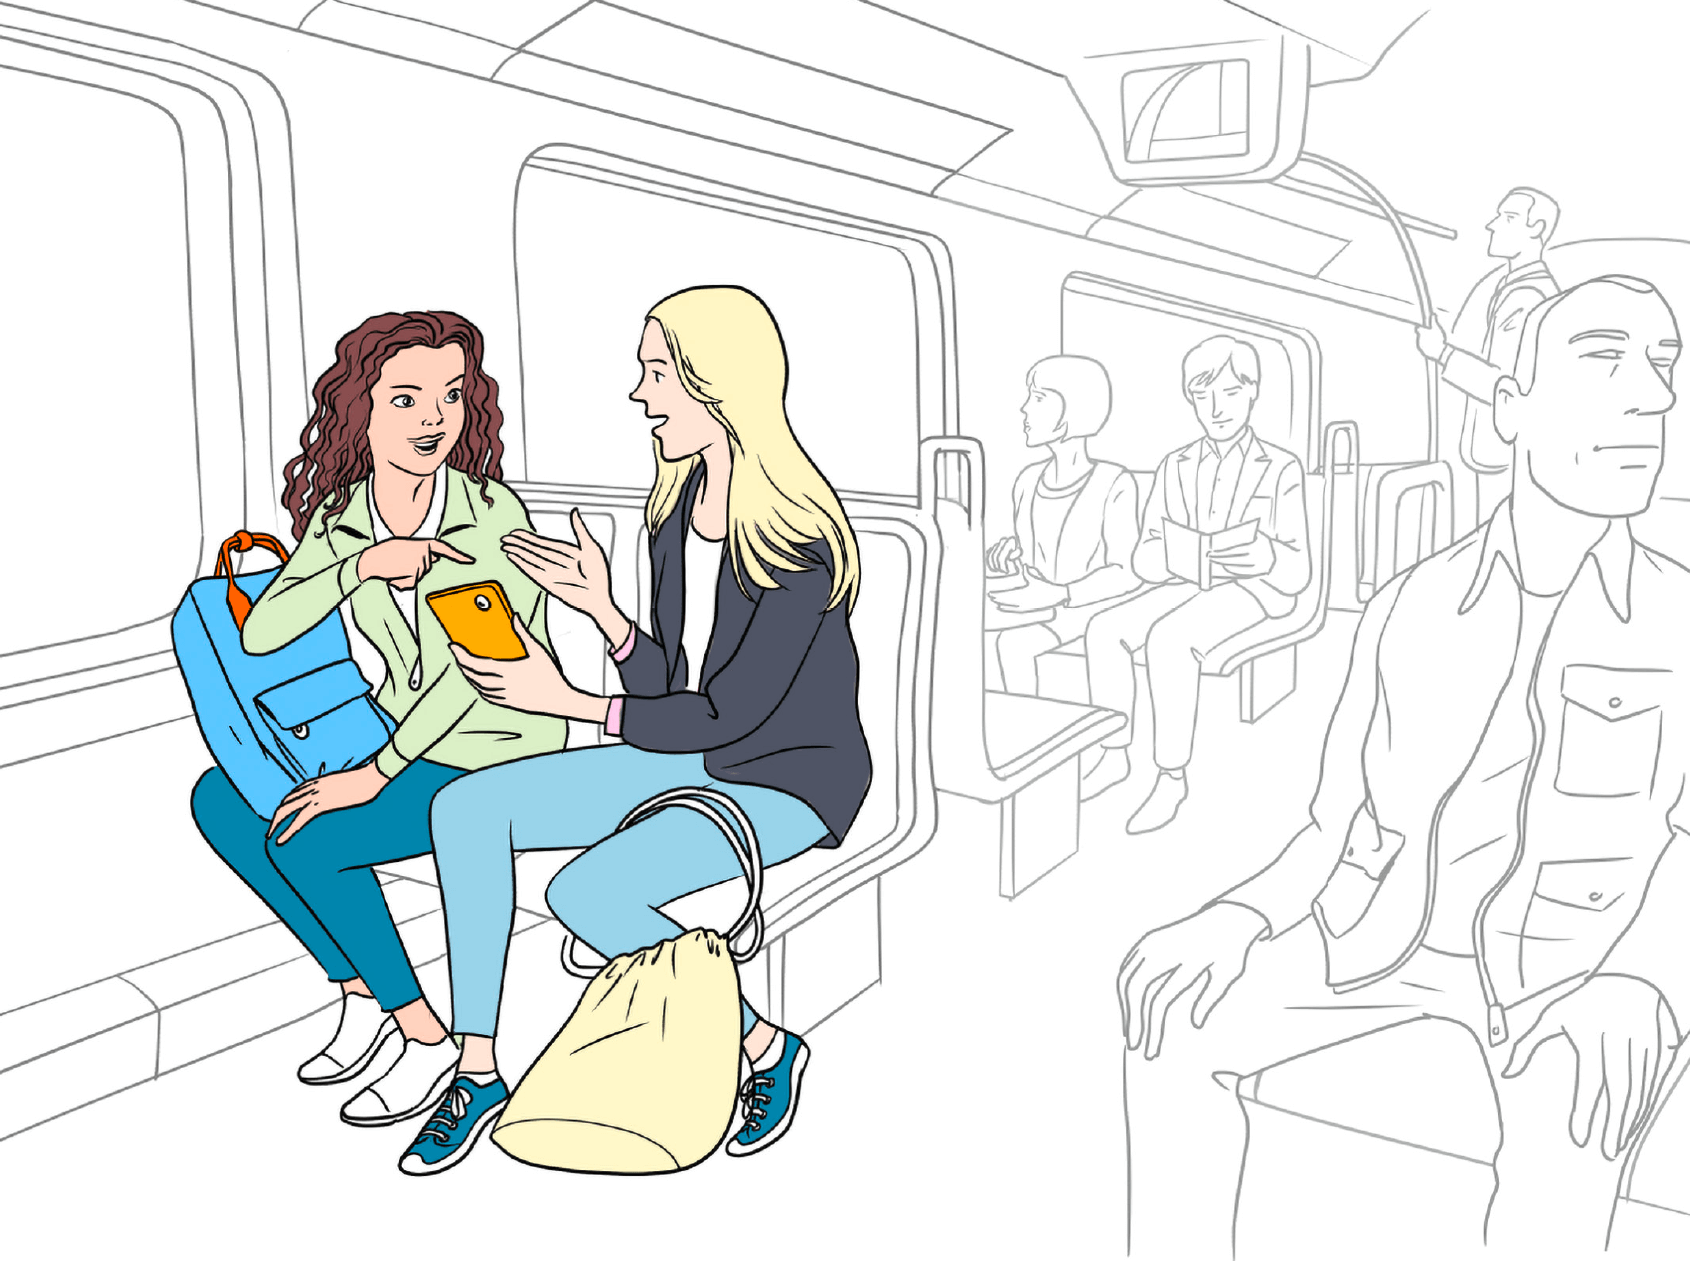 Zwei Schülerinnen – Leonie und Niloufar, beide ca. 15 Jahre alt – sitzen nebeneinander in der U-Bahn und unterhalten sich. Leonie zeigt Niloufar etwas auf ihrem Handy. Niloufar deutet mit ihrem Finger auf das Handy-Display.